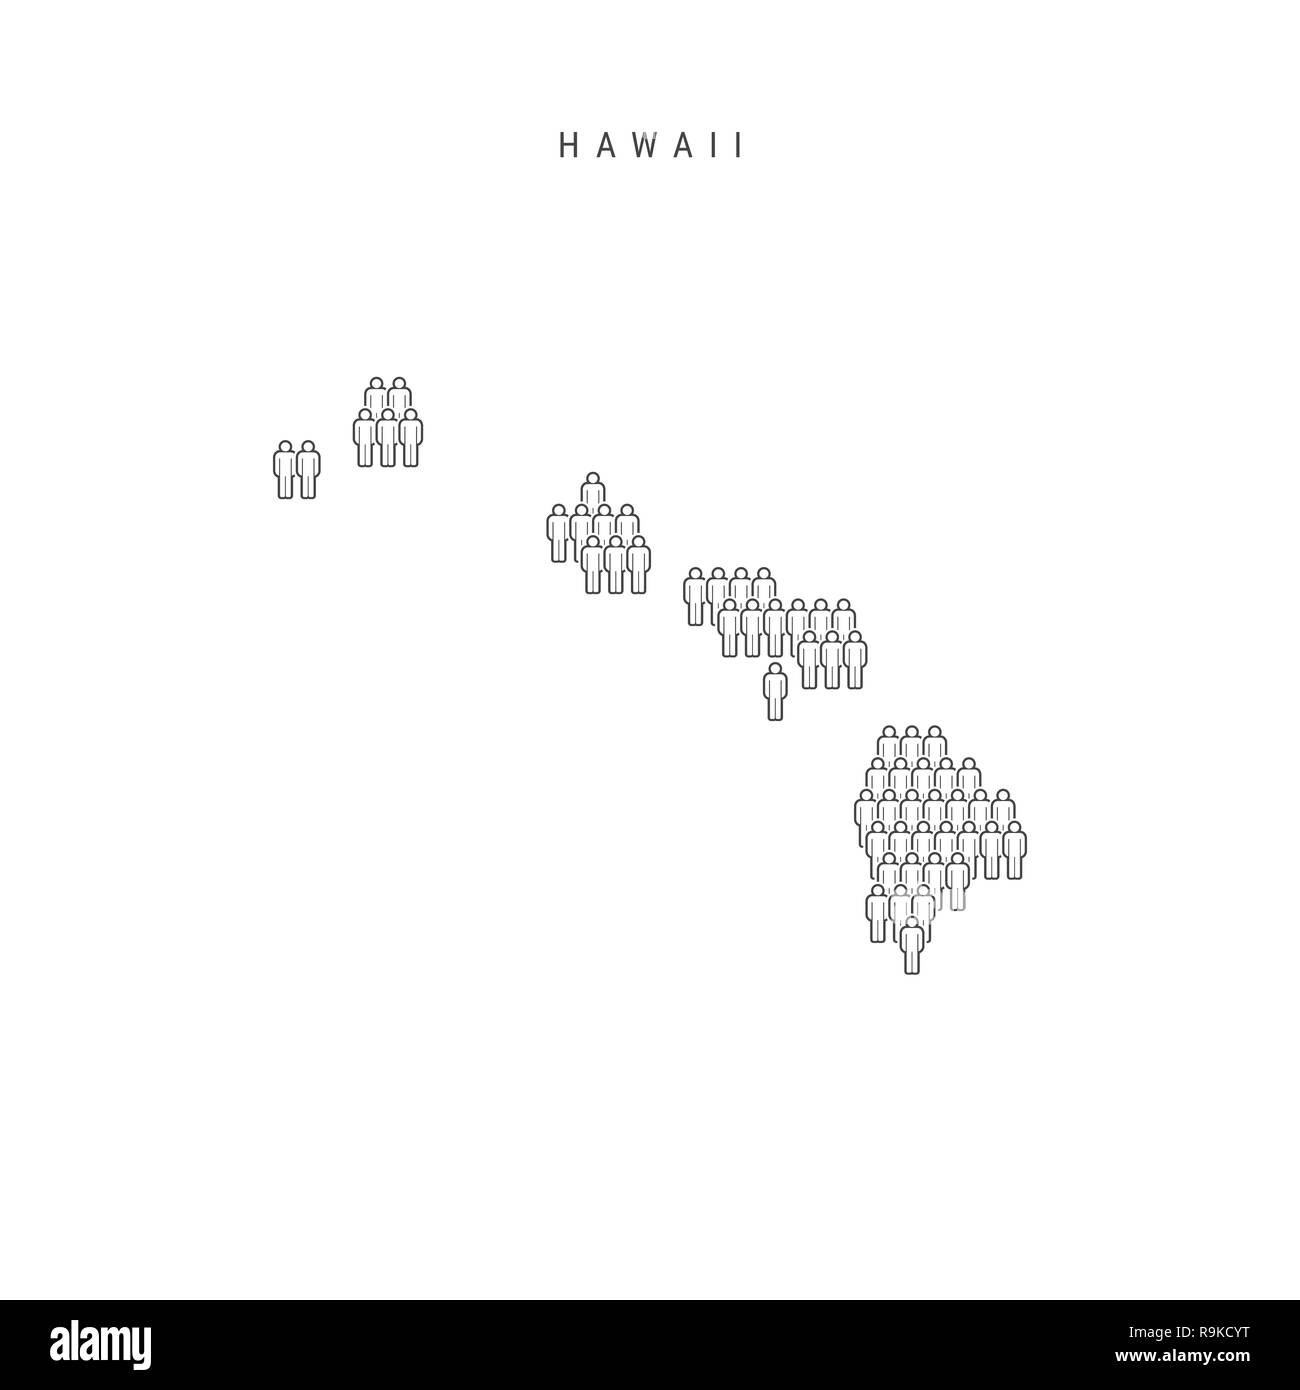 Leute Karte von Hawaii, US-Staat. Stilisierte Silhouette, Leute in der Form einer Karte von Hawaii. Hawaii Bevölkerung. Abbildung isoliert auf weißem B Stockfoto